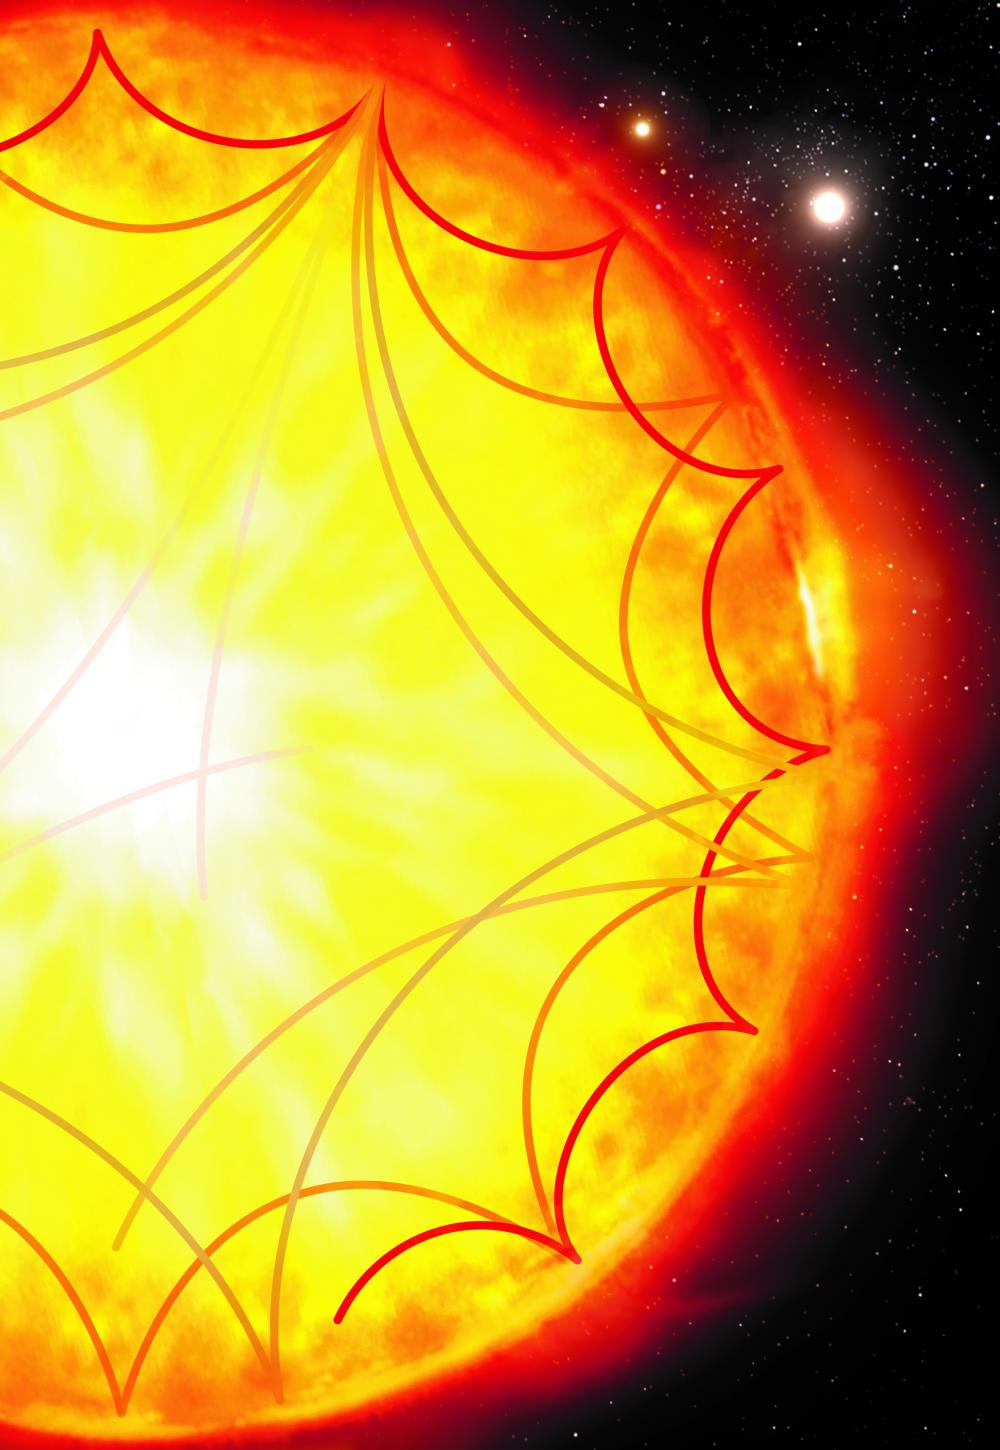 L’Astérosismologie confirme que les étoiles plus anciennes tournent plus vite que prévu